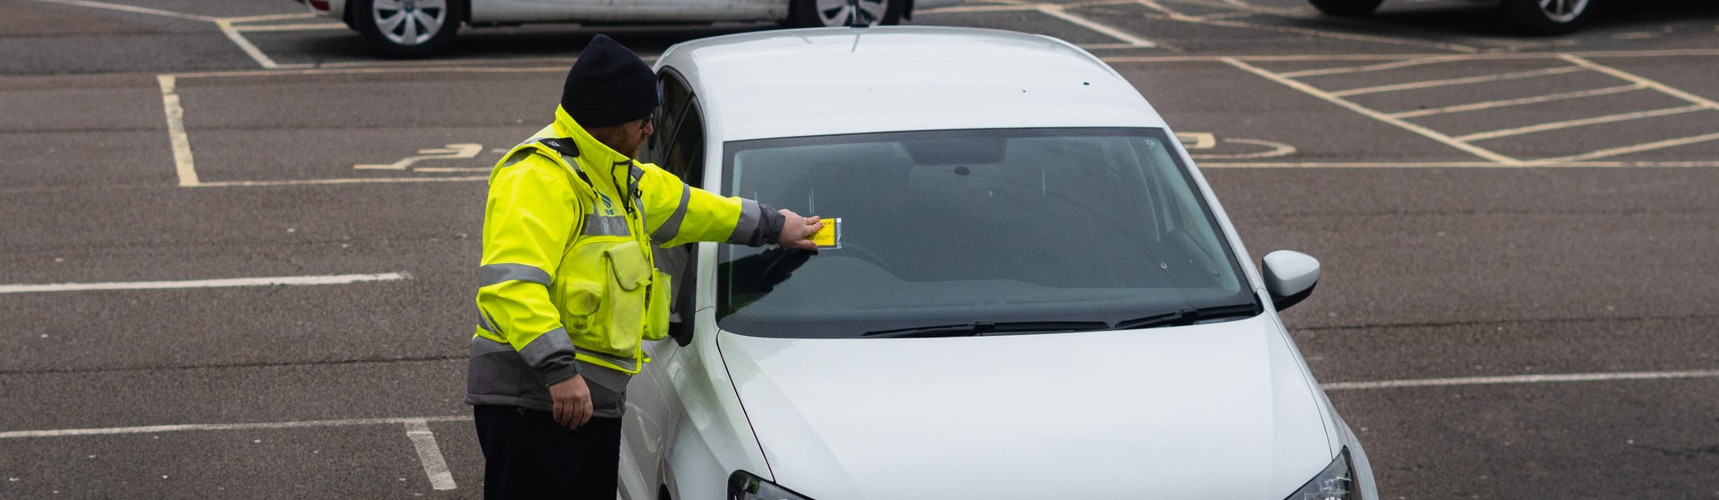 Controle de multas: um fiscal afixa um multa no parabrisas de um carro